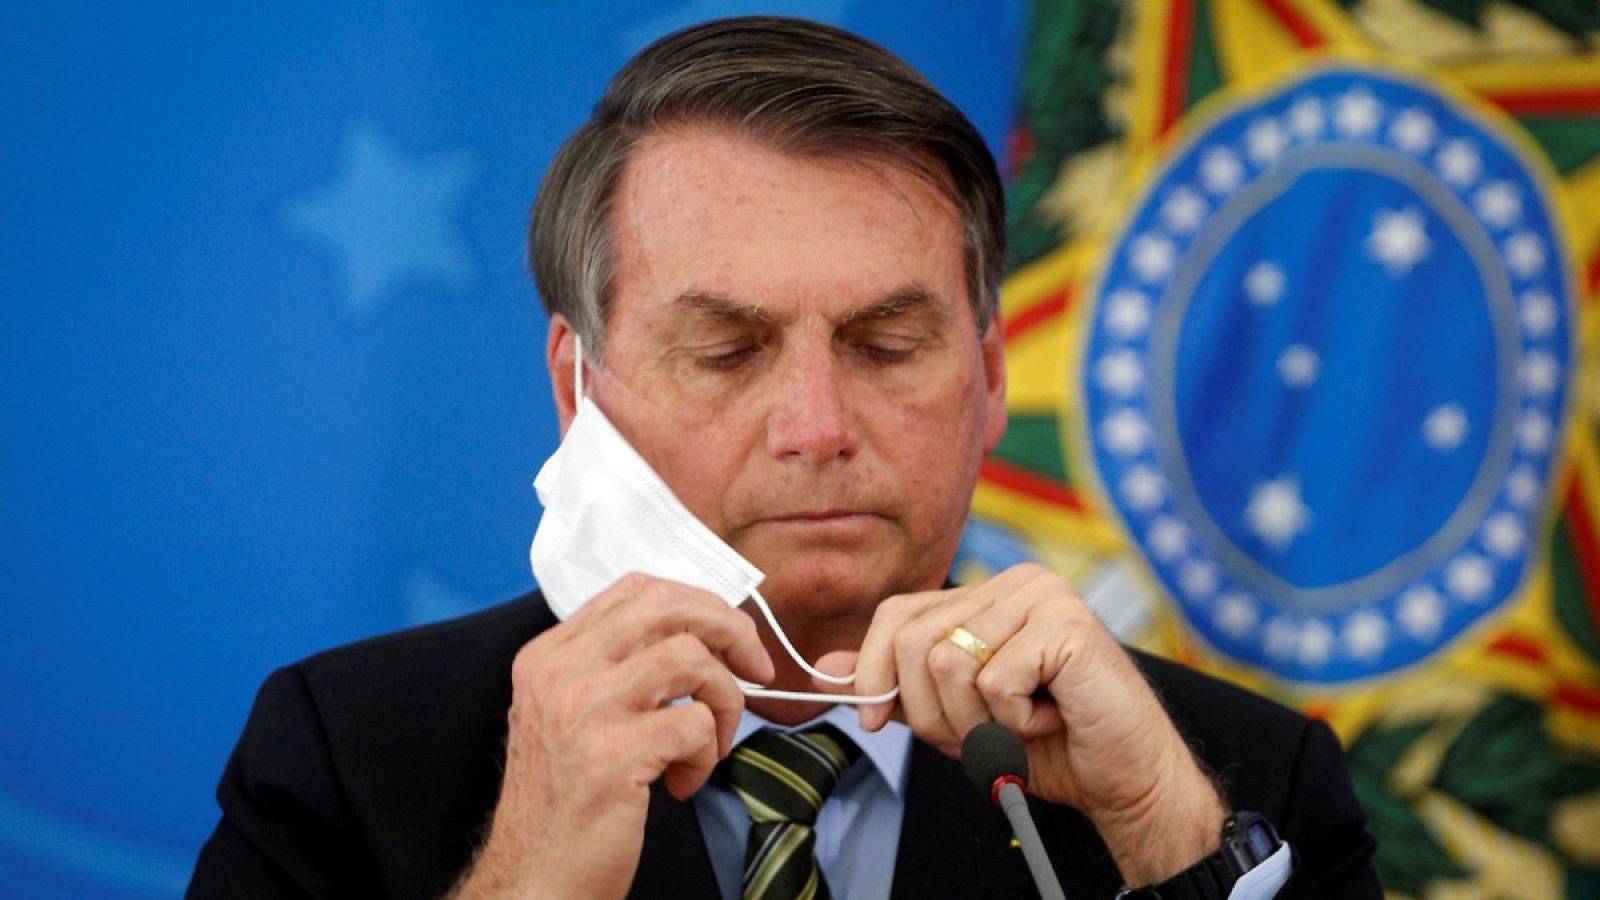 El presidente de Brasil, Jair Bolsonaro, se coloca la mascarilla en una rueda de prensa en una foto de archivo